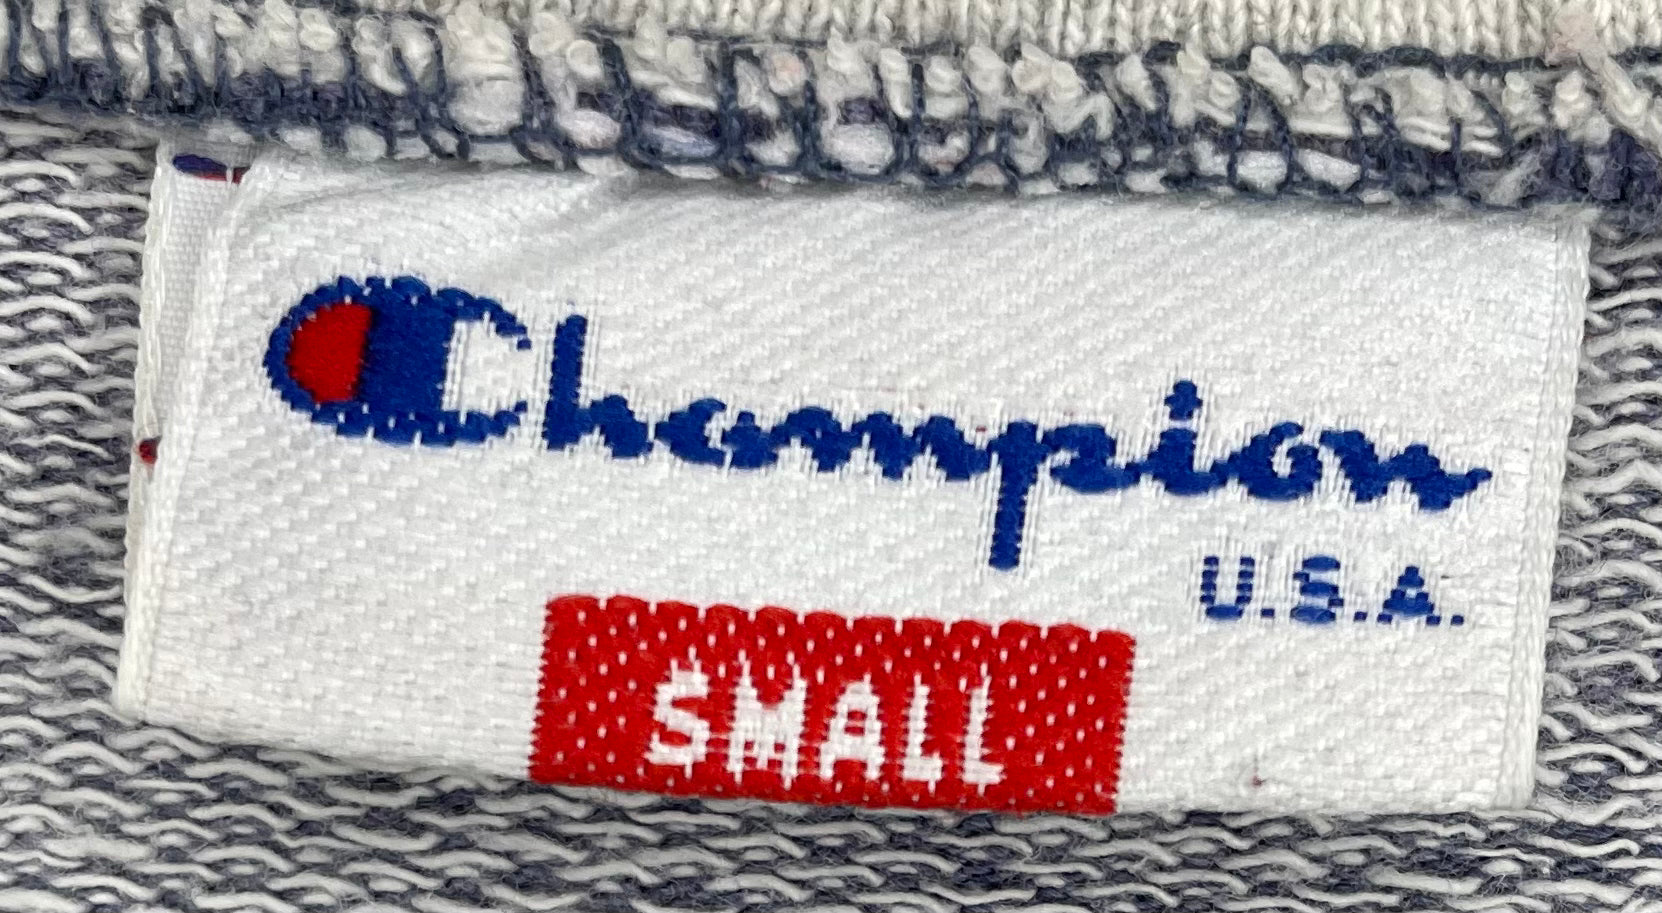 Champion Vintage Q-Zip Sweater Hellgrau Größe S